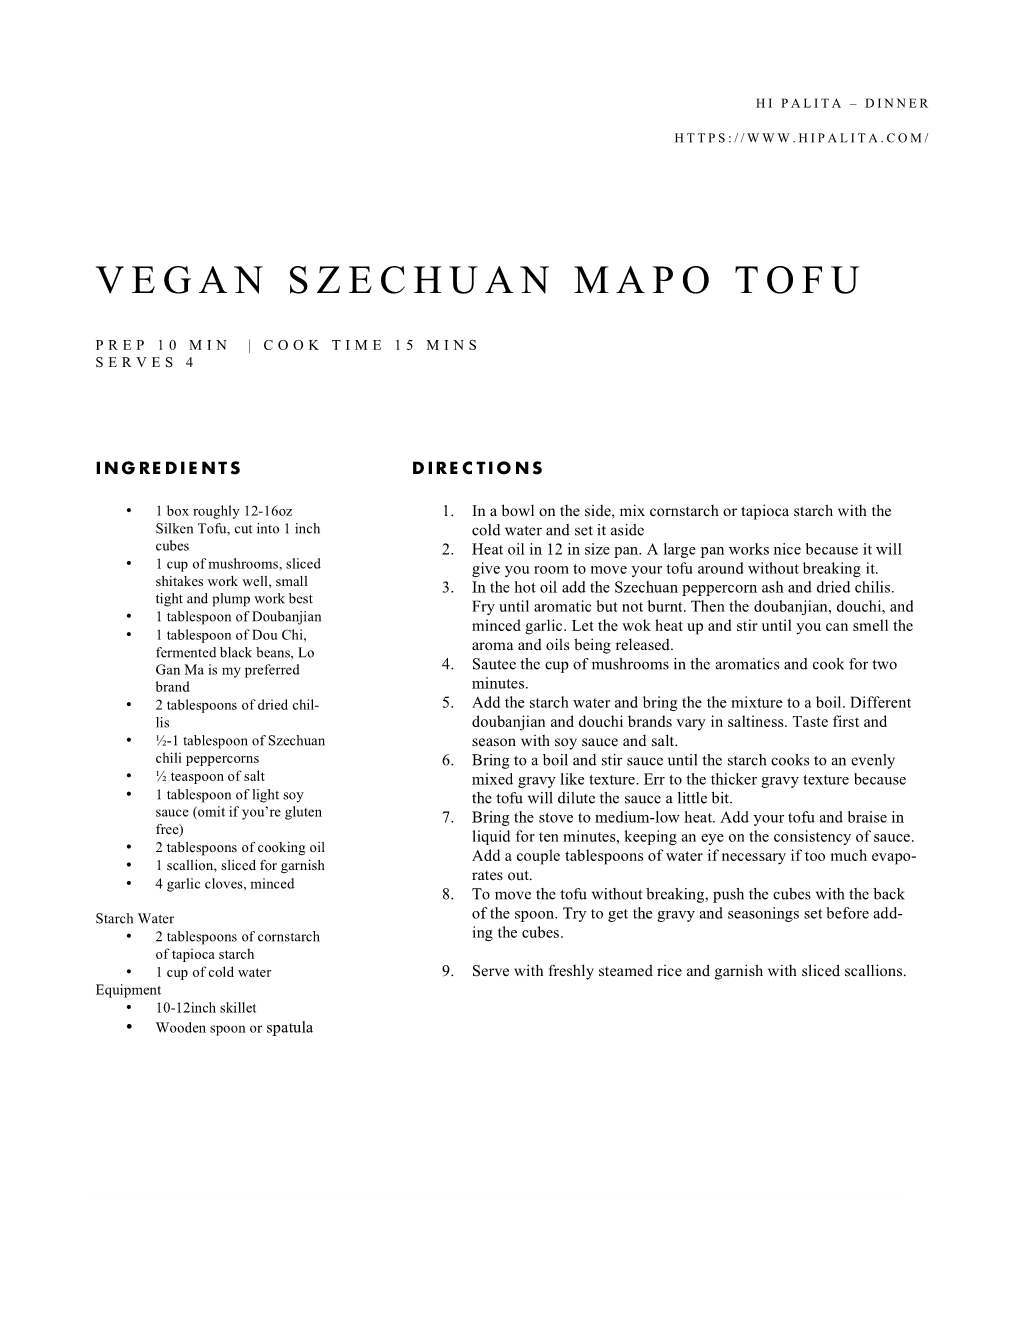 Vegan Szechuan Mapo Tofu